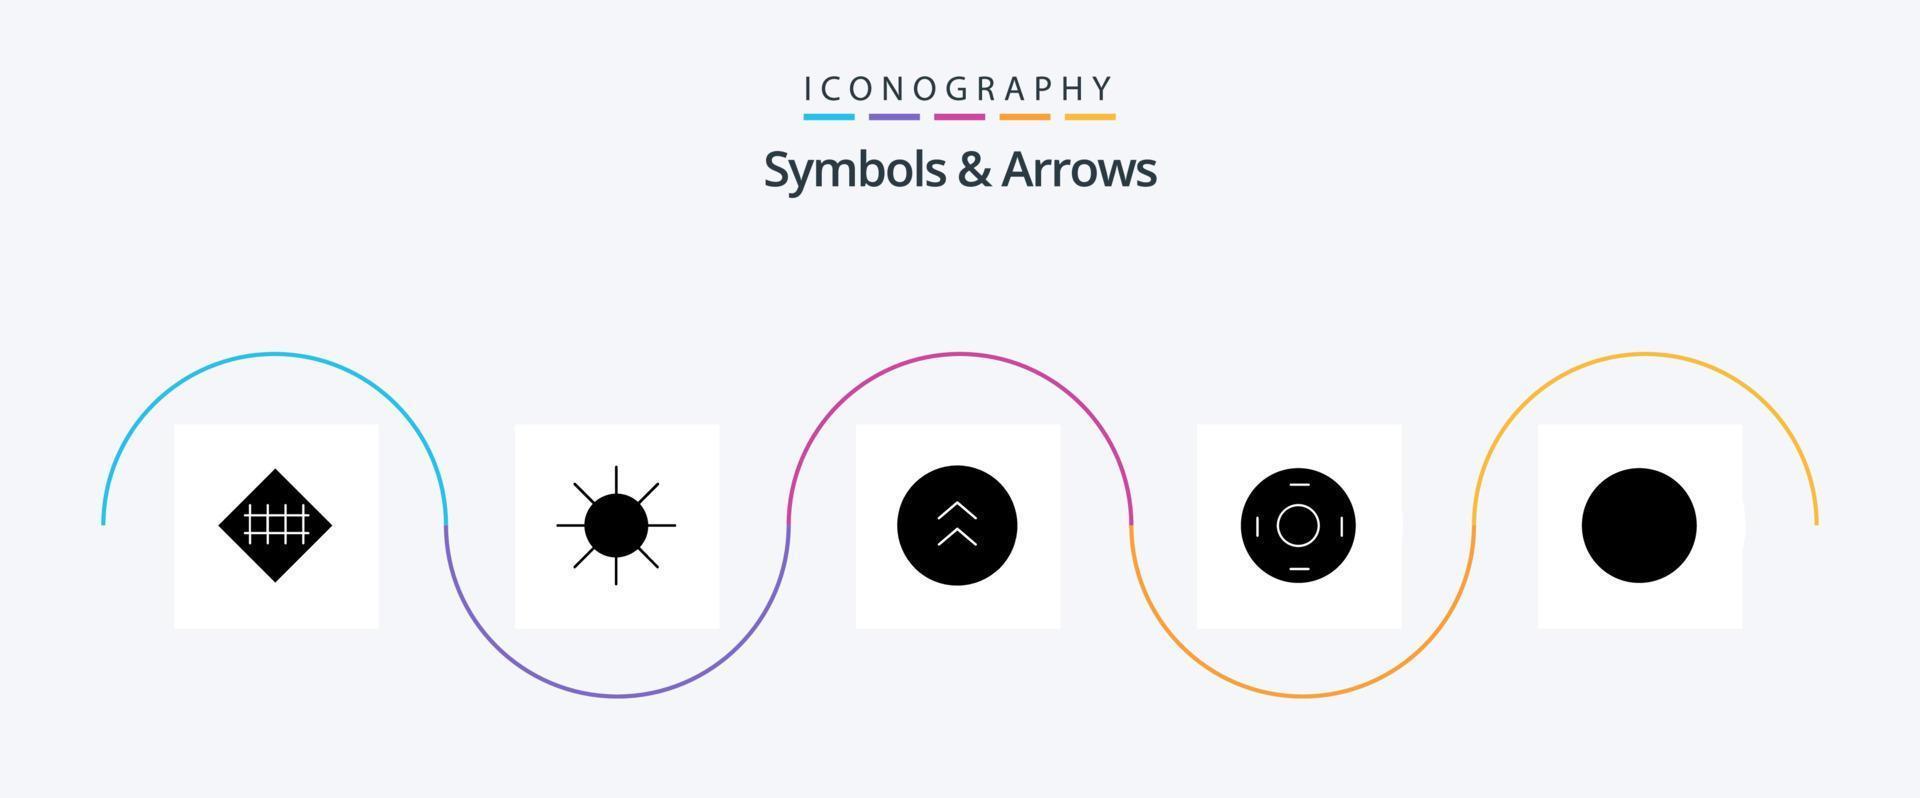 paquete de iconos de símbolos y flechas glifo 5 que incluye ronda. simbolos flechas simbolismo. cosmos vector